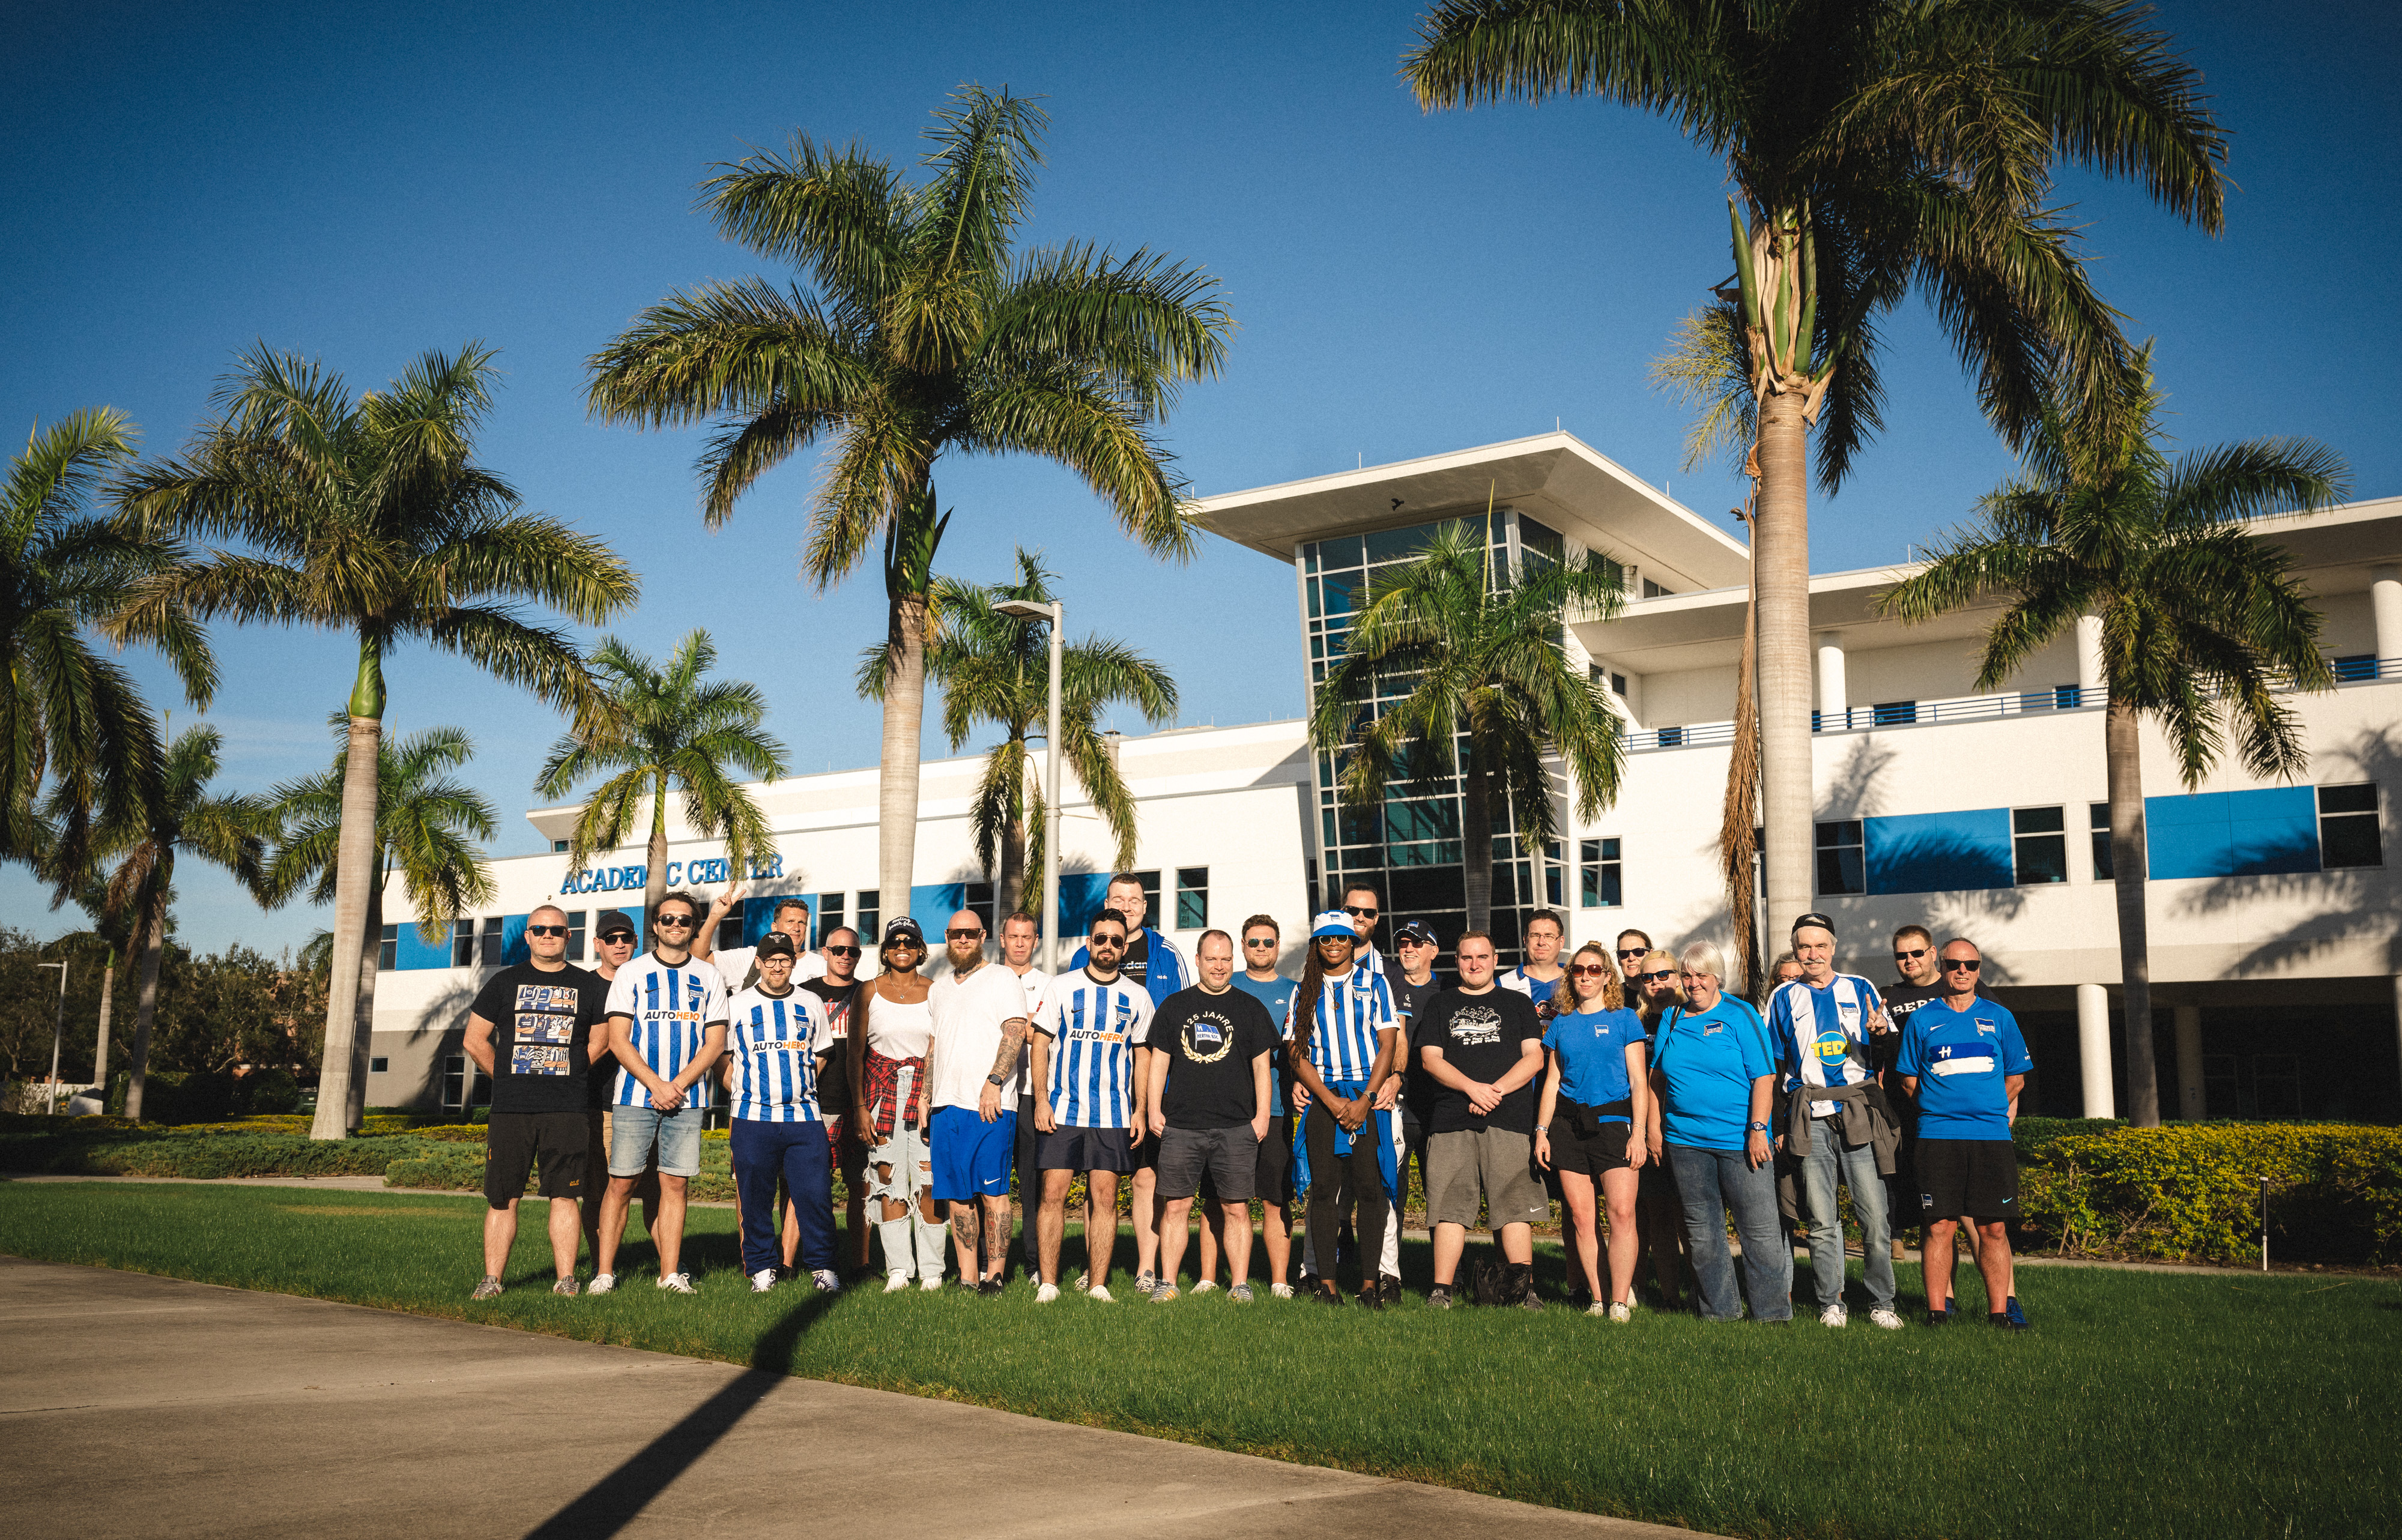 Unsere Fans posieren vor Palmen auf der IMG Academy.